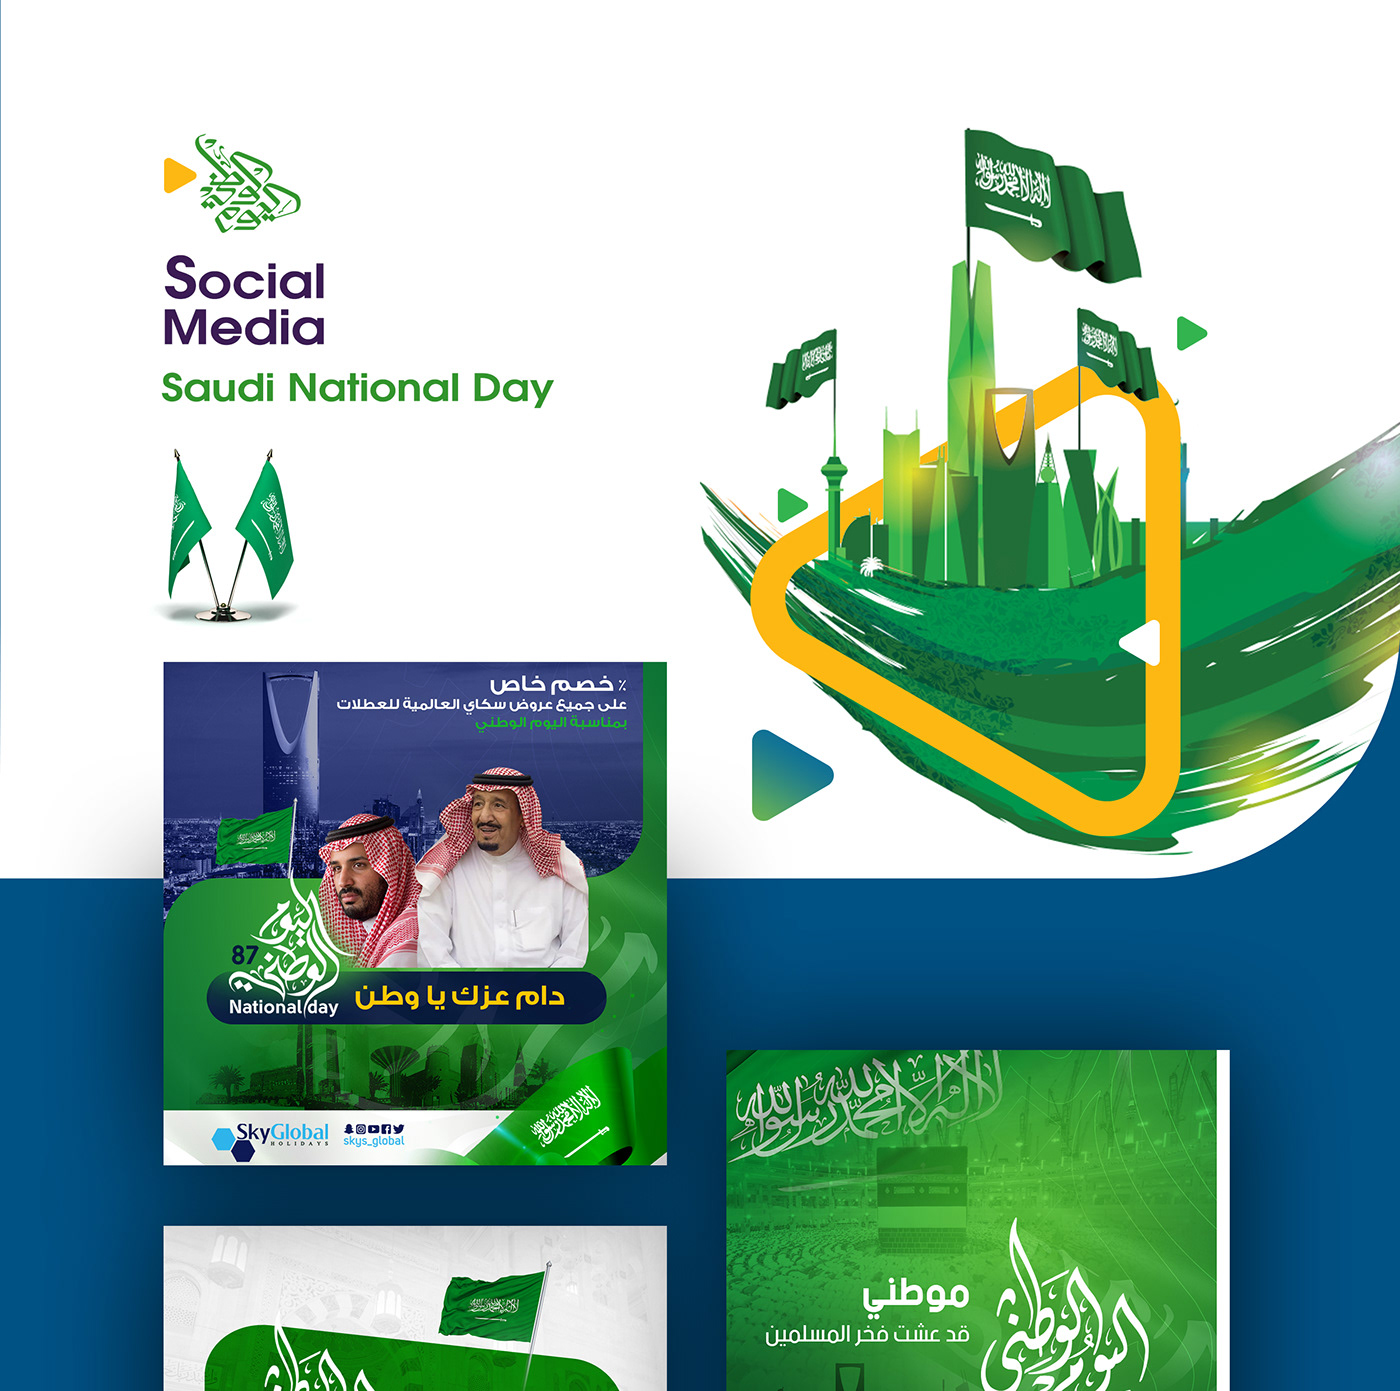 تصاميم تصميم اليوم الوطني اليوم الوطني السعودي saudi national day National day